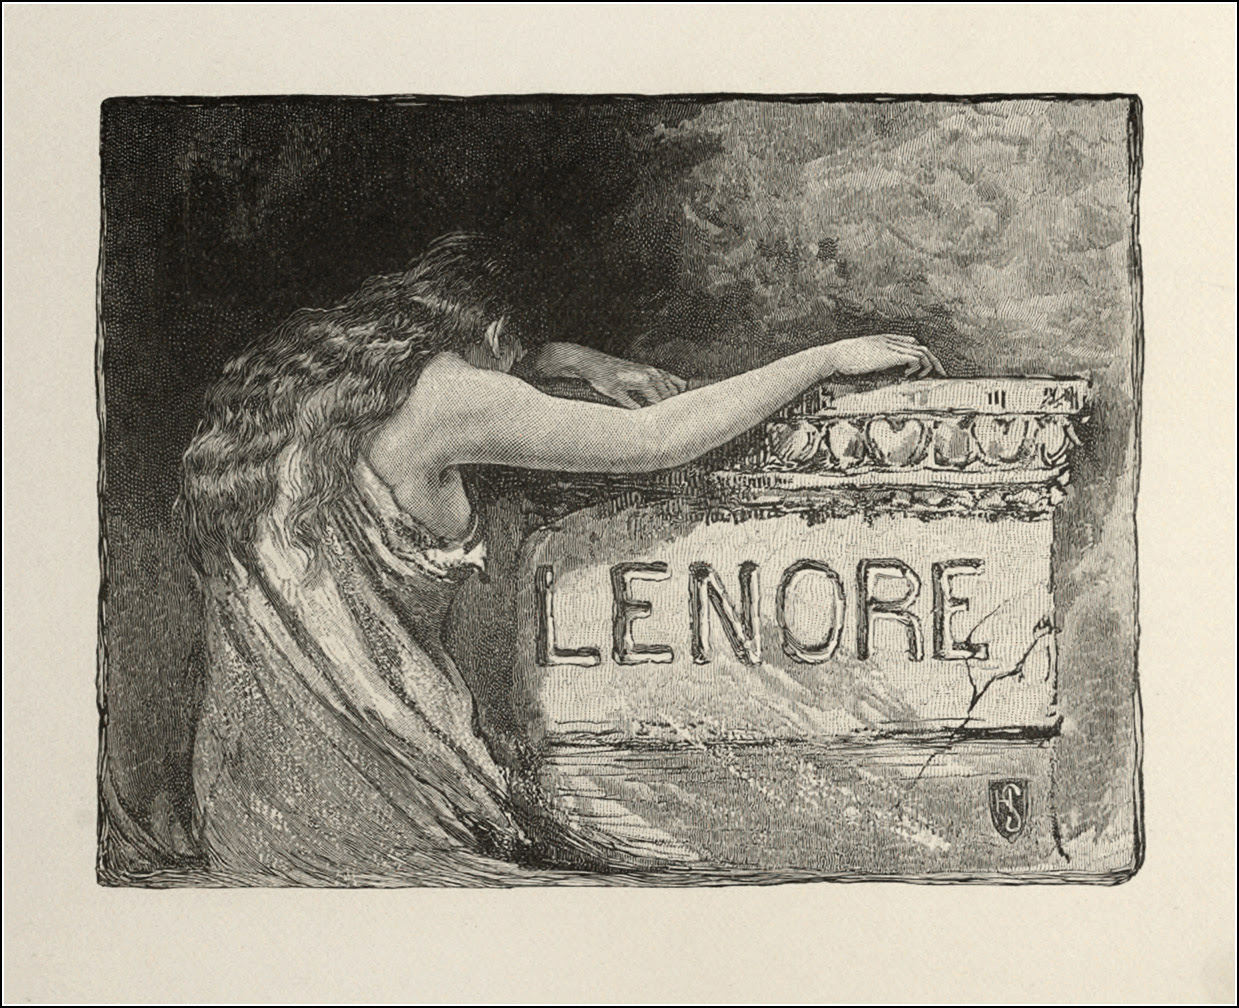  Lenore, Edgar Allen Poe